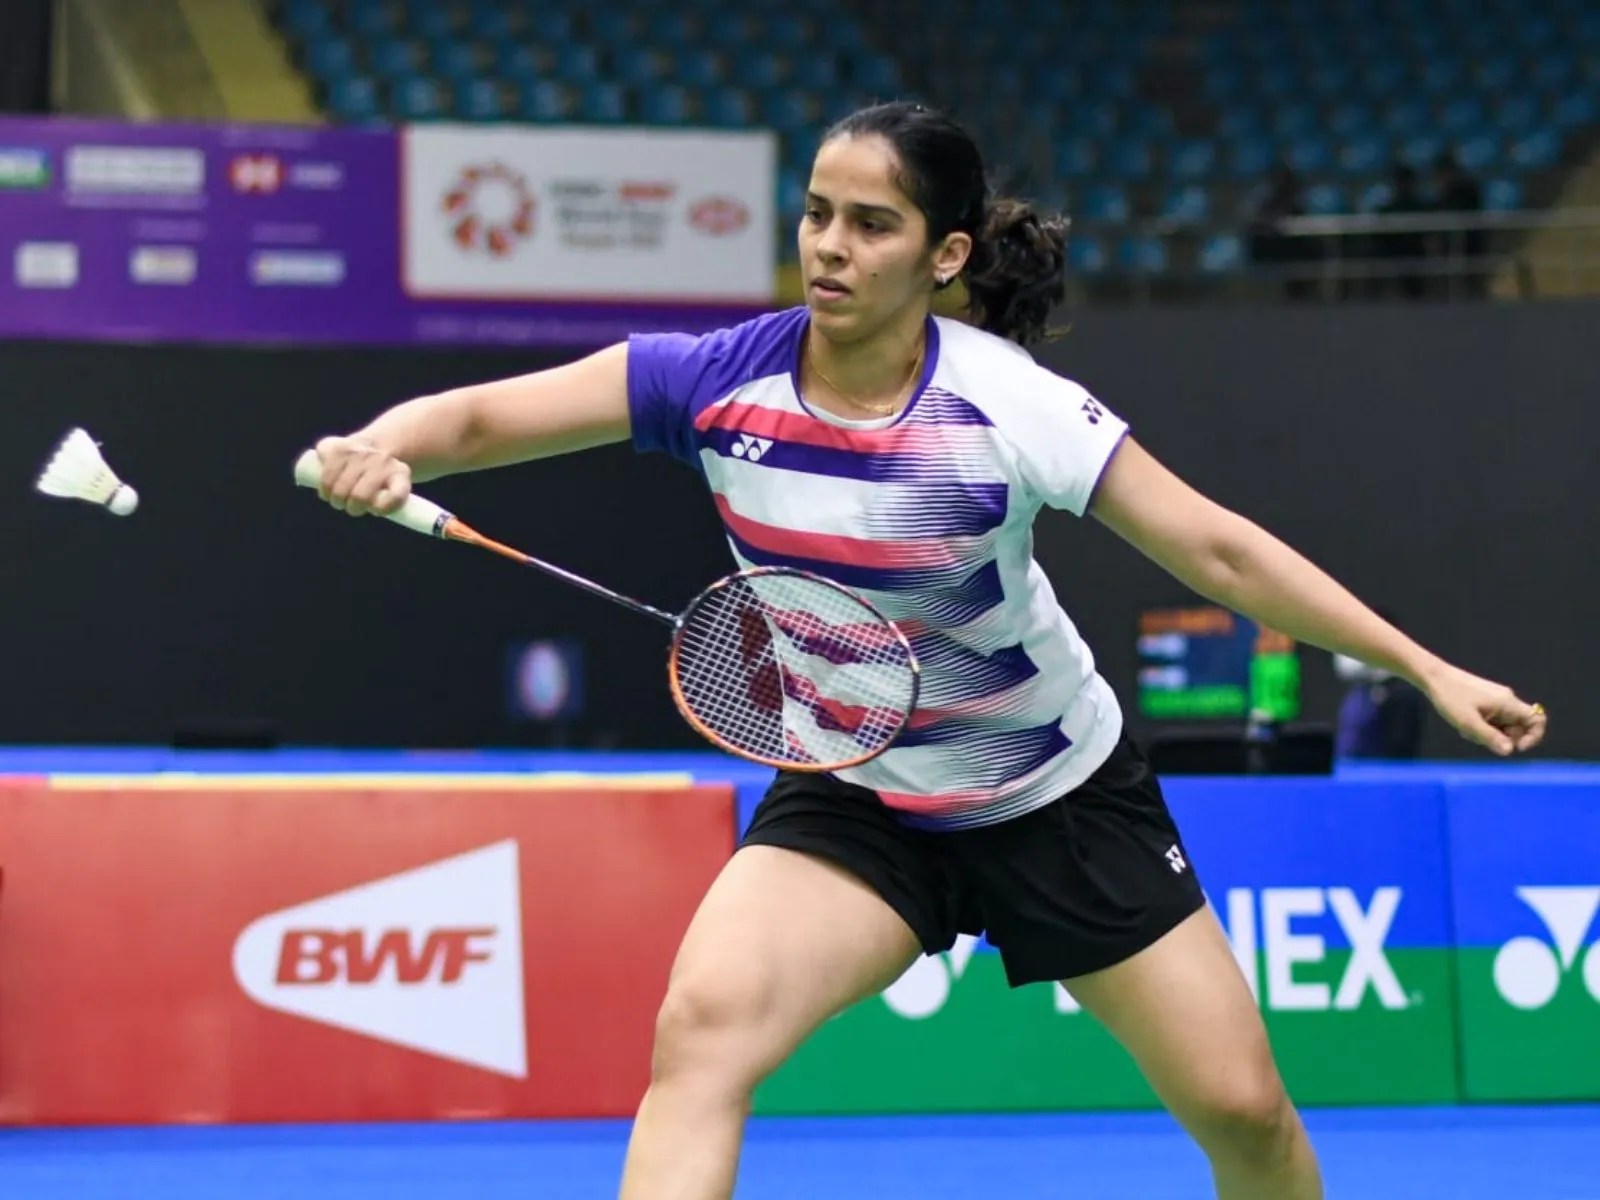 Malaysia Masters Badminton LIVE: Saina Nehwal faces World No.20 Kim Ga-eun in first round at Malaysia Masters - Follow Nehwal vs Ga-eun LIVE updates